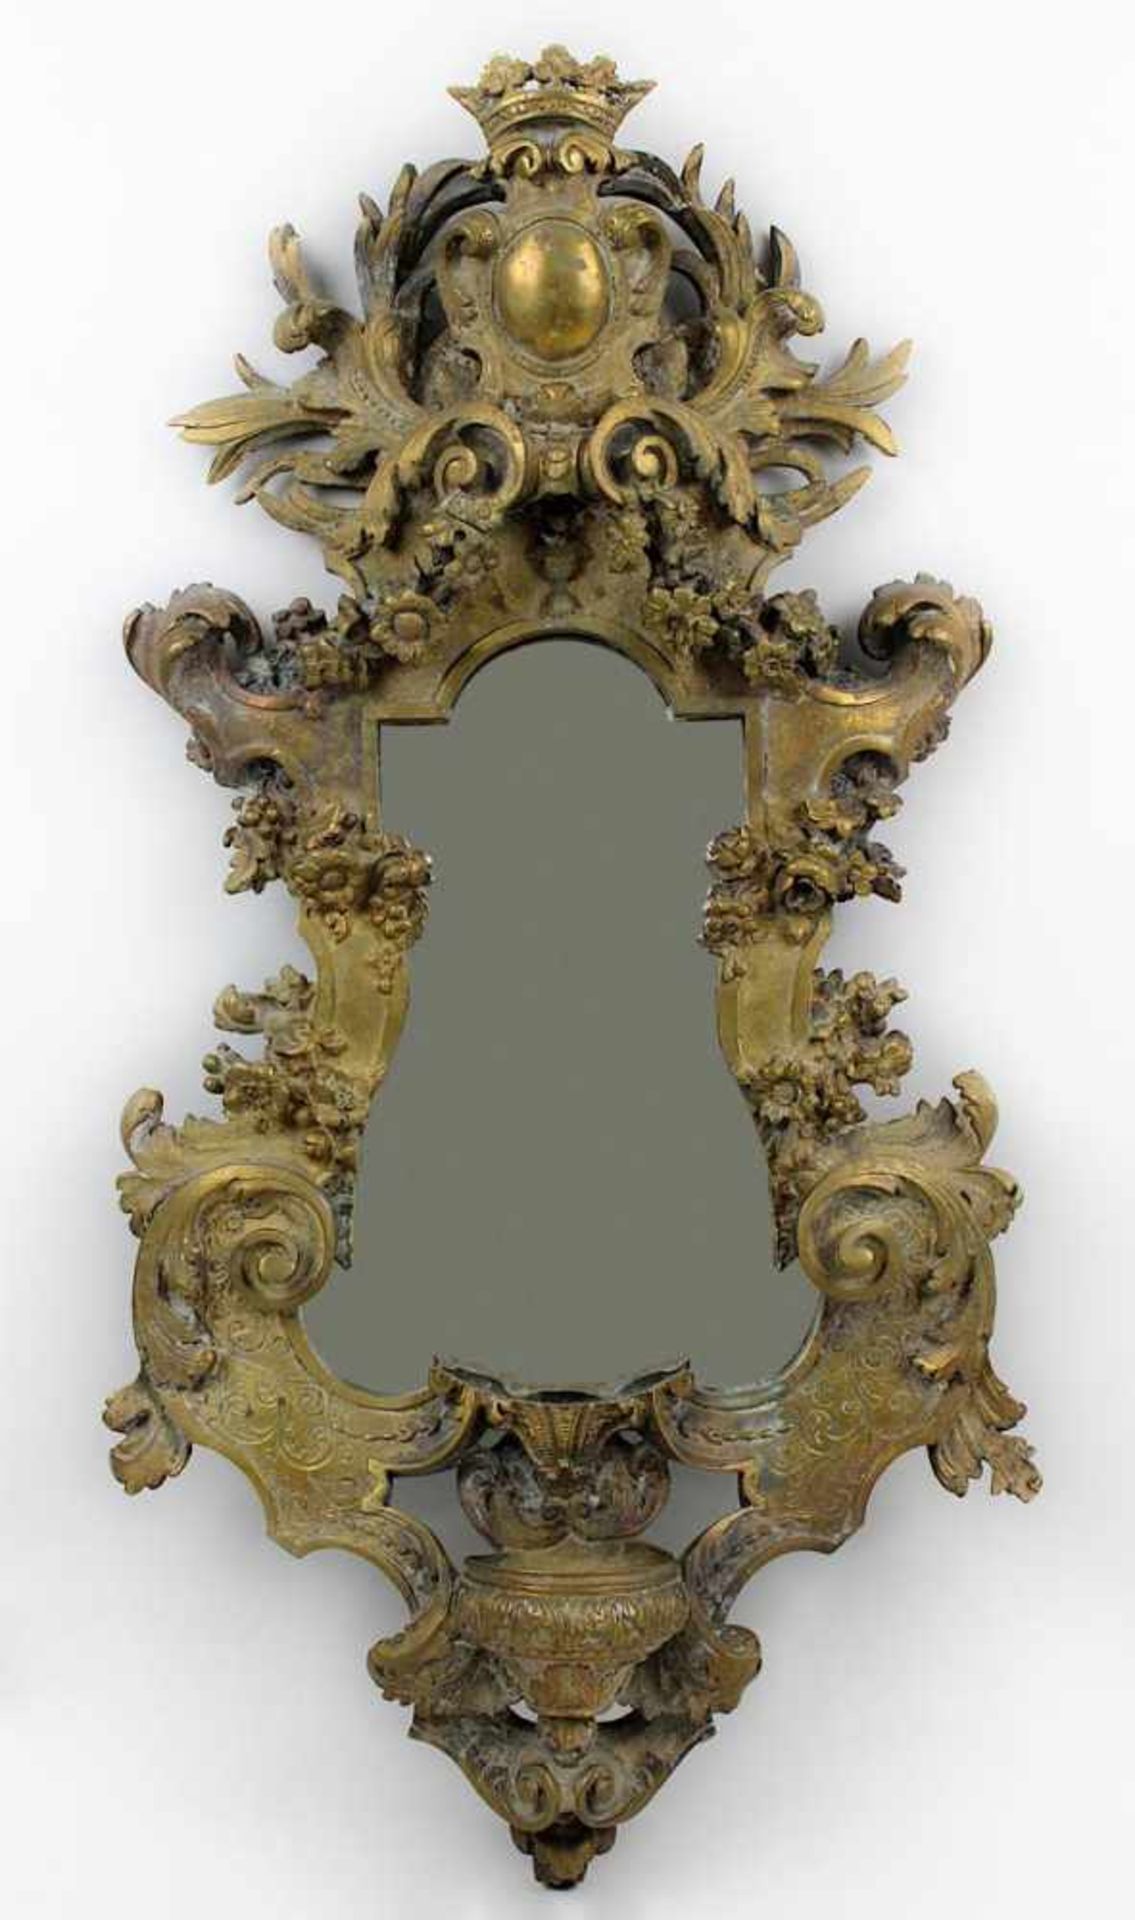 Wandapplike mit Spiegel und Wappenbekrönung, 20. Jh., Gelbguss, im Barockstil, mit Blatt- und